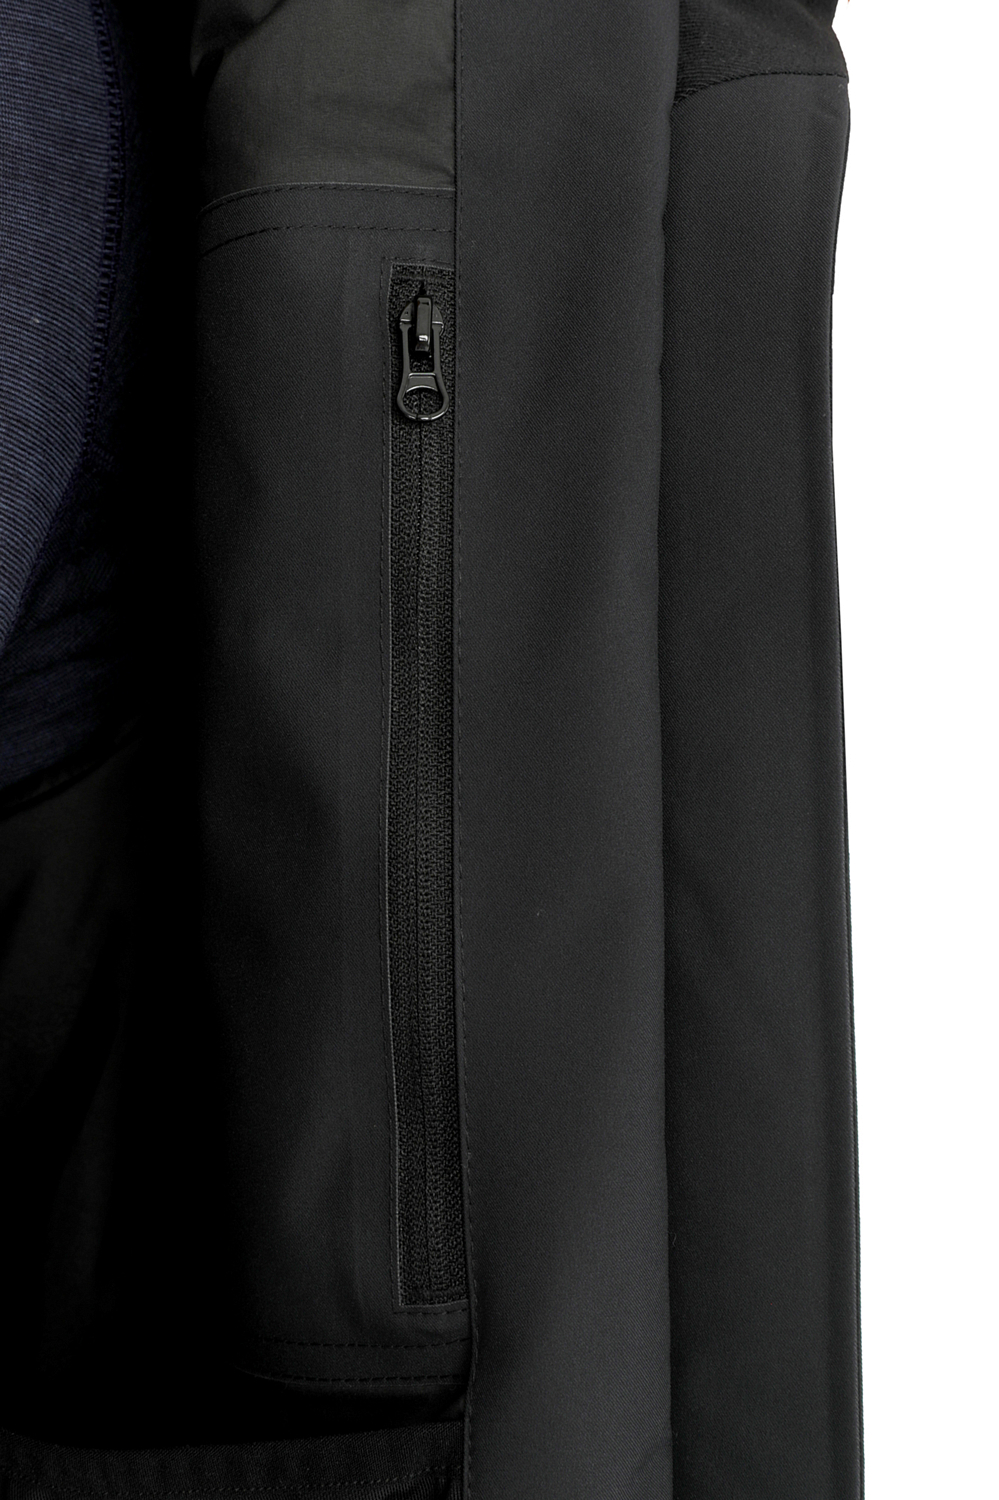 Куртка горнолыжная COLMAR 1385 1VC Black